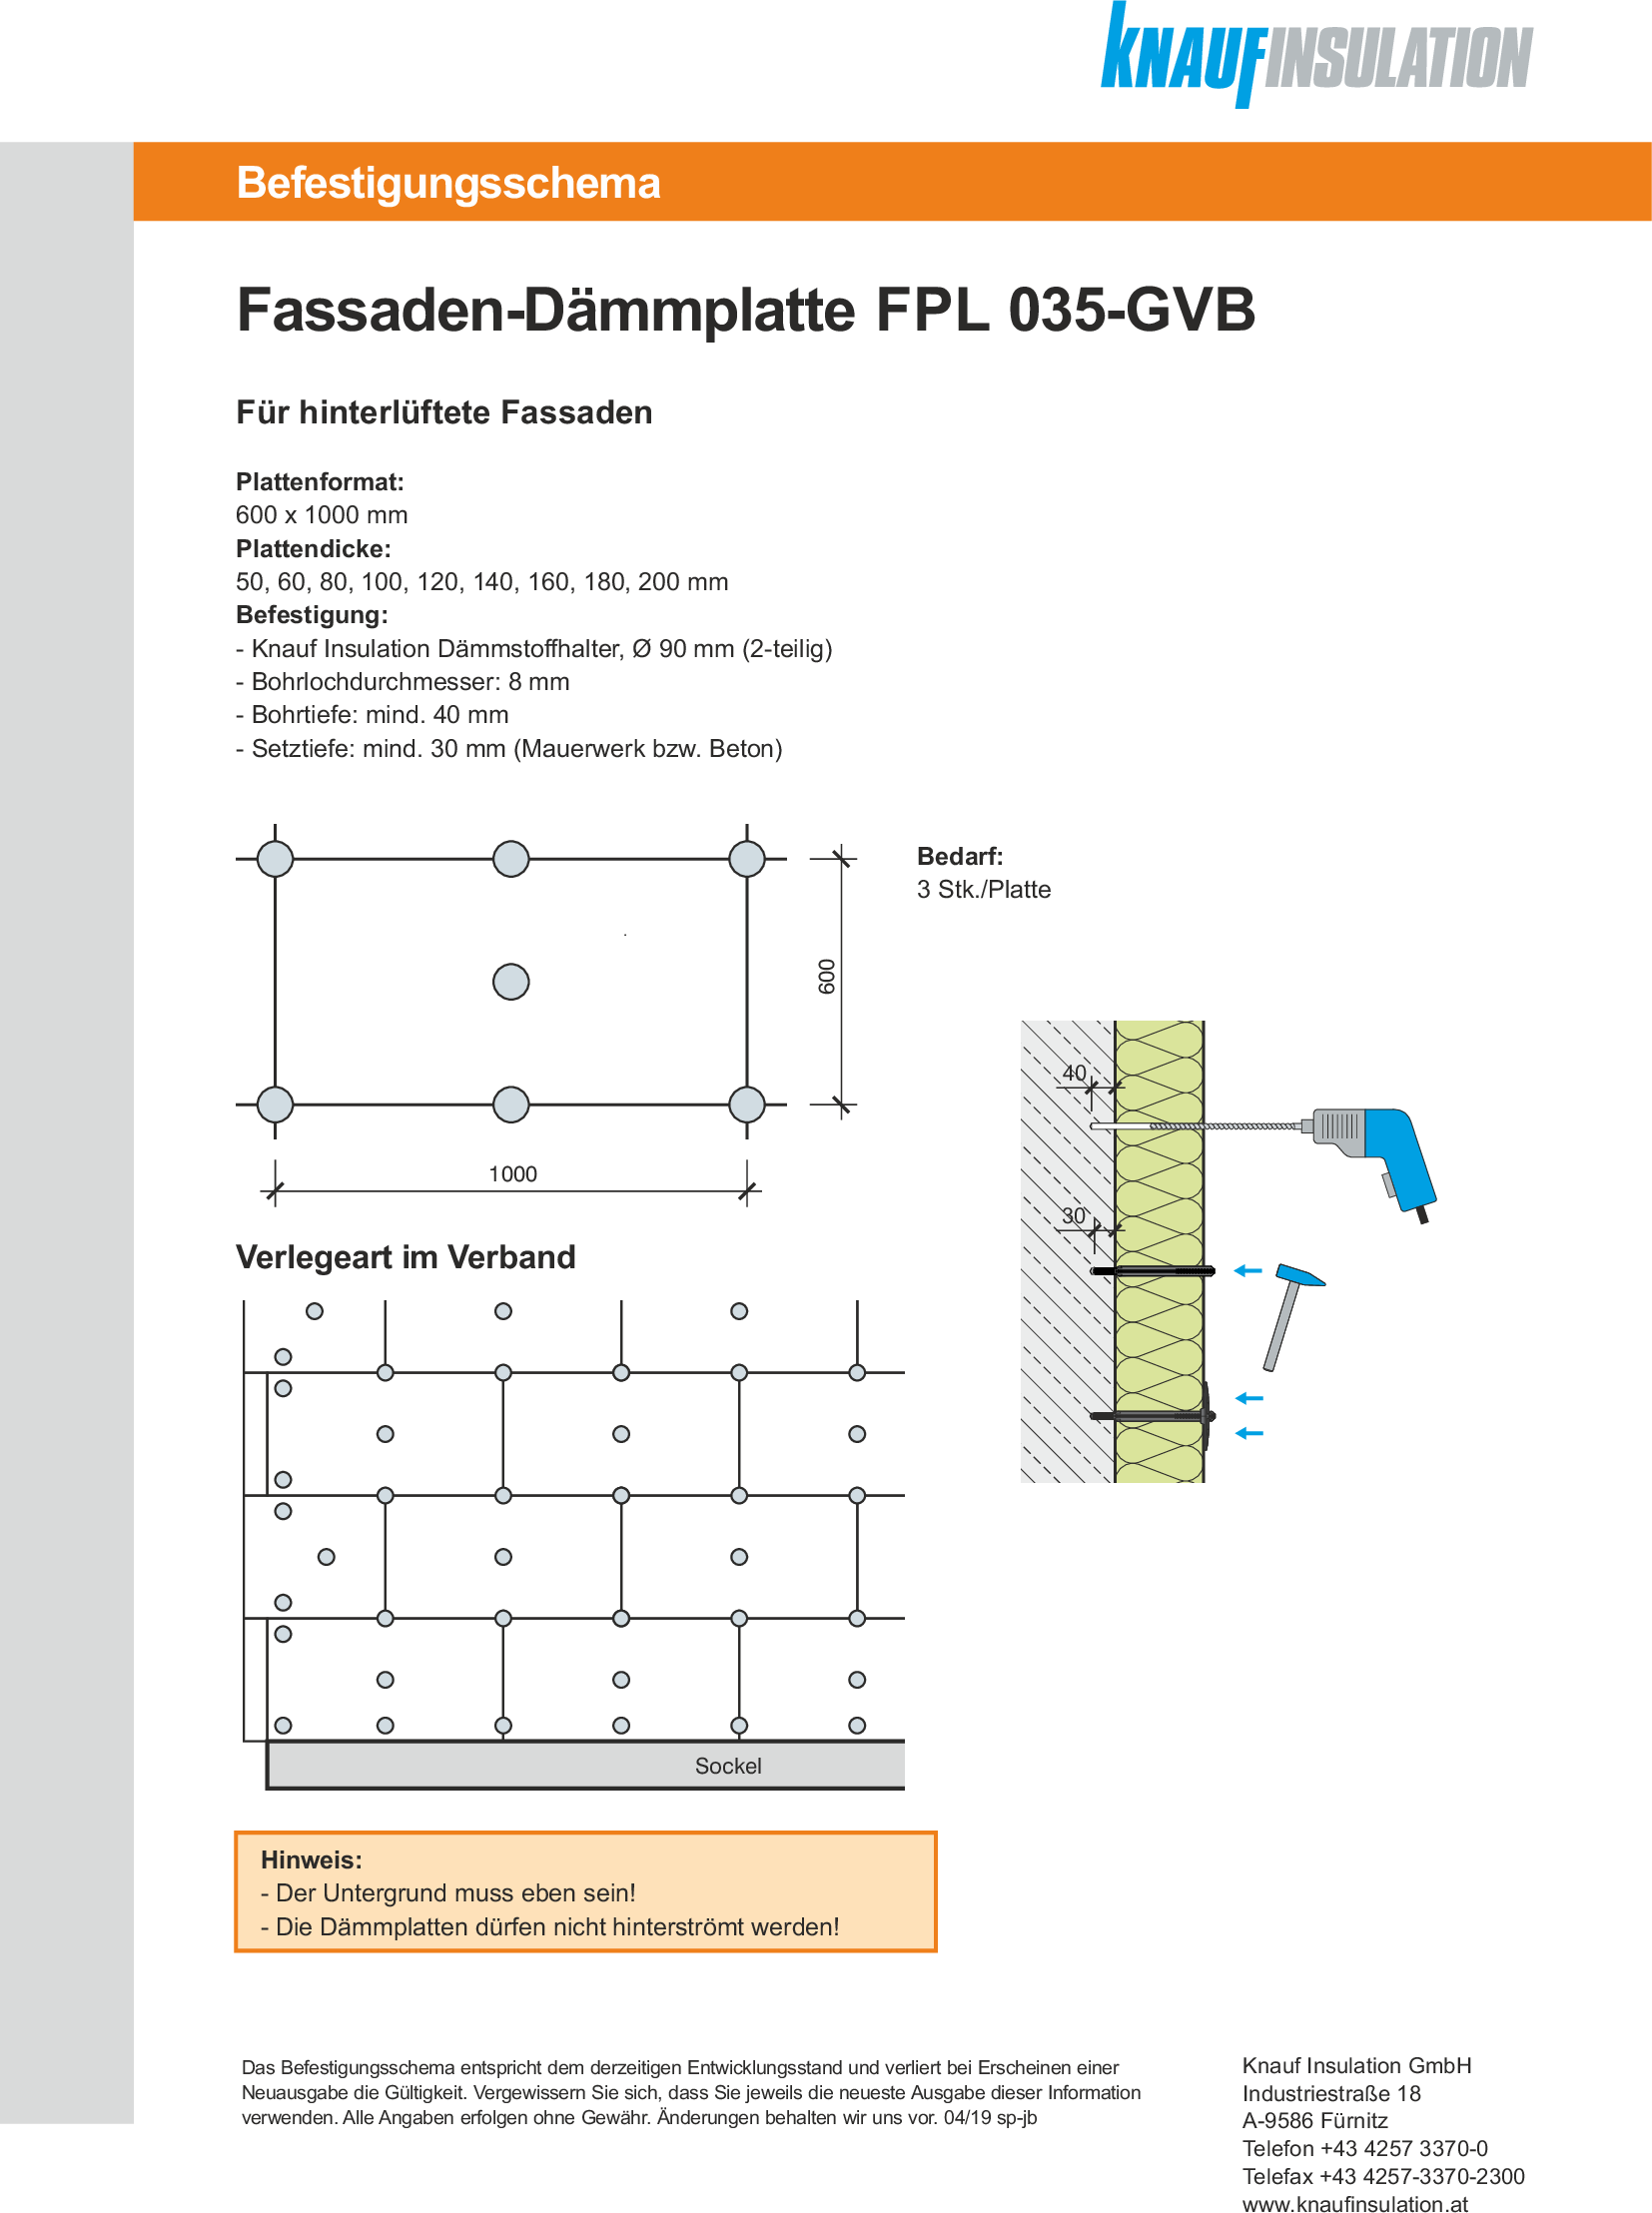 Fassaden-Dämmplatte FPL 035 -GVB, Befestigungsschema